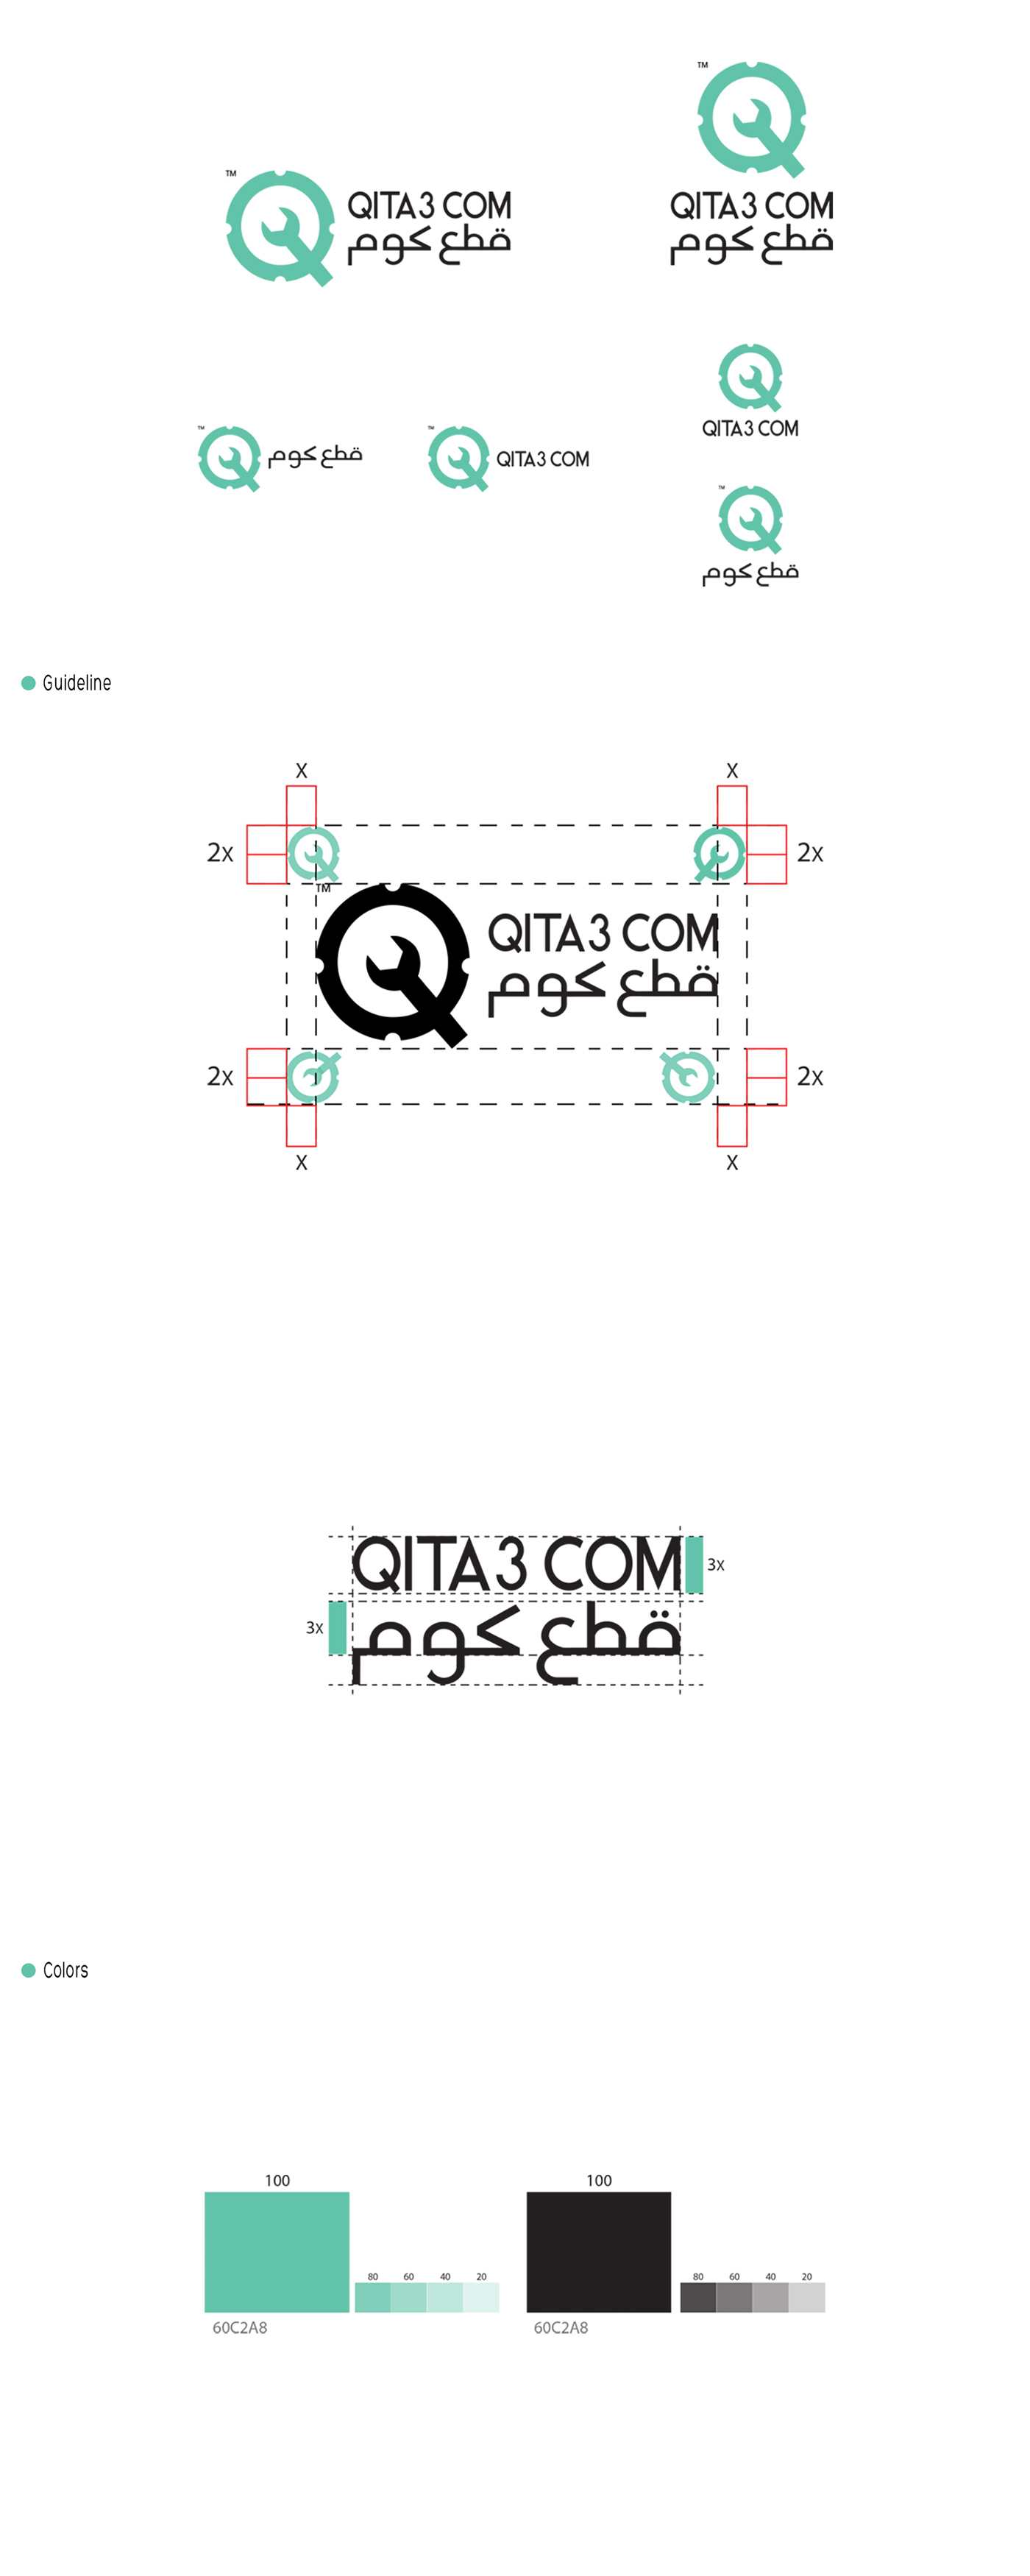 قطع غيار علامة تجارية Qita3Com قطع كوم brand